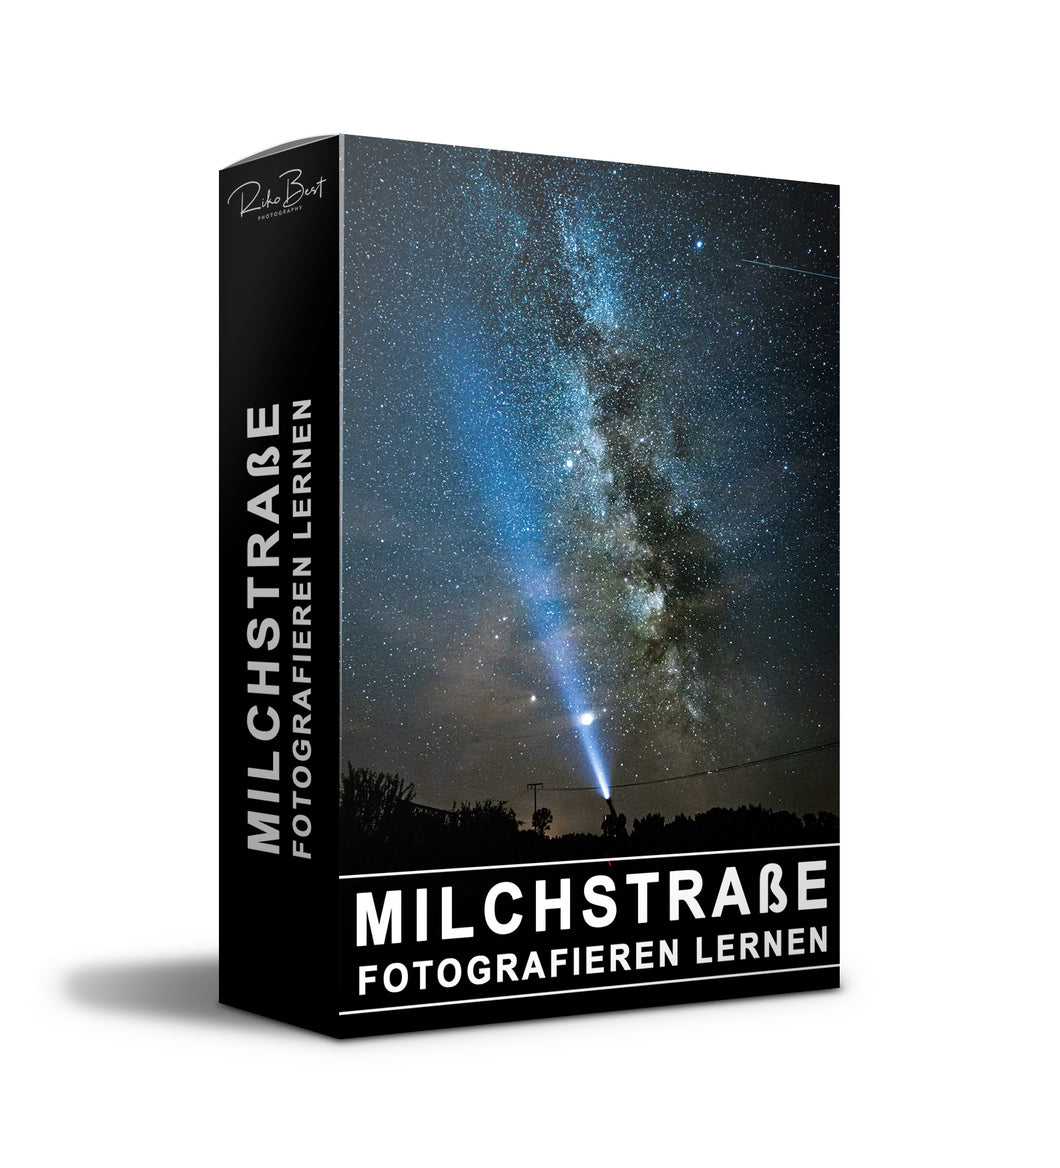 Milchstraße fotografieren von A-Z  Video Kurs